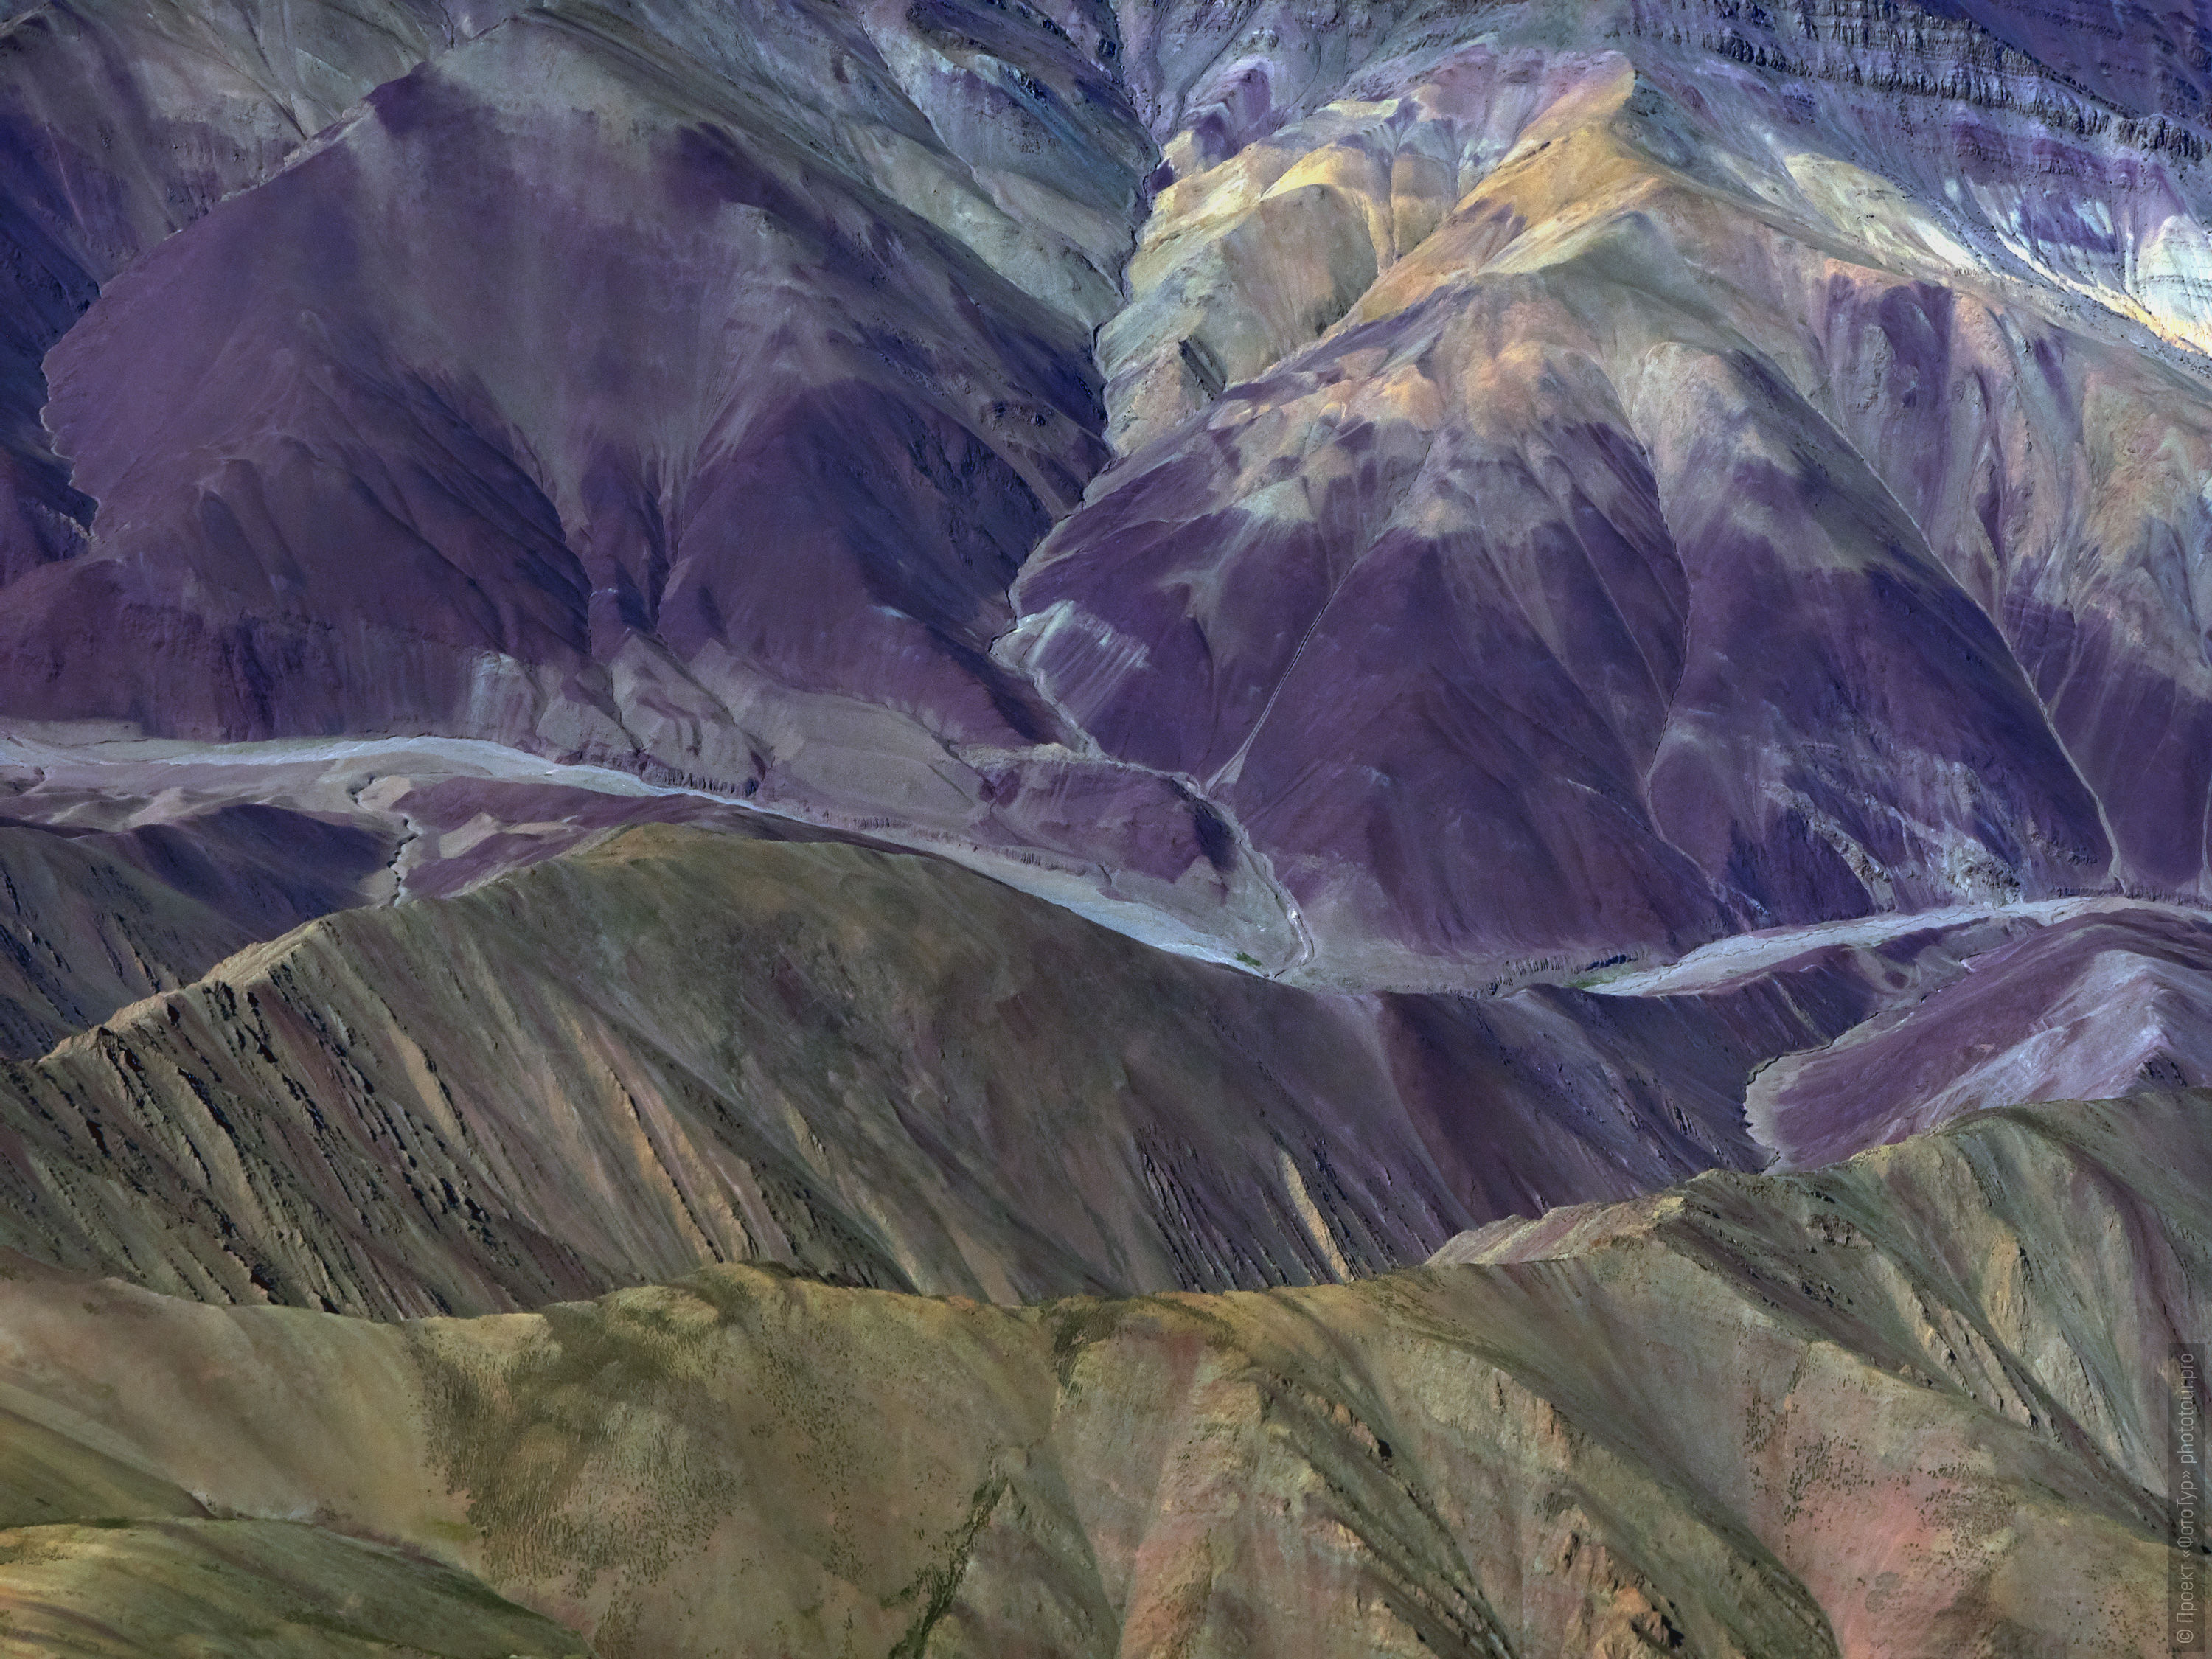 Горы Ладакха с высоты самолетного полета, Северная Индия. Фототур Невероятные Гималаи-2: Танец Цам в монастыре Тиксей + озеро Тсо Морири, Ладакх,  Тибет, 11.11.-20.11.2020г.